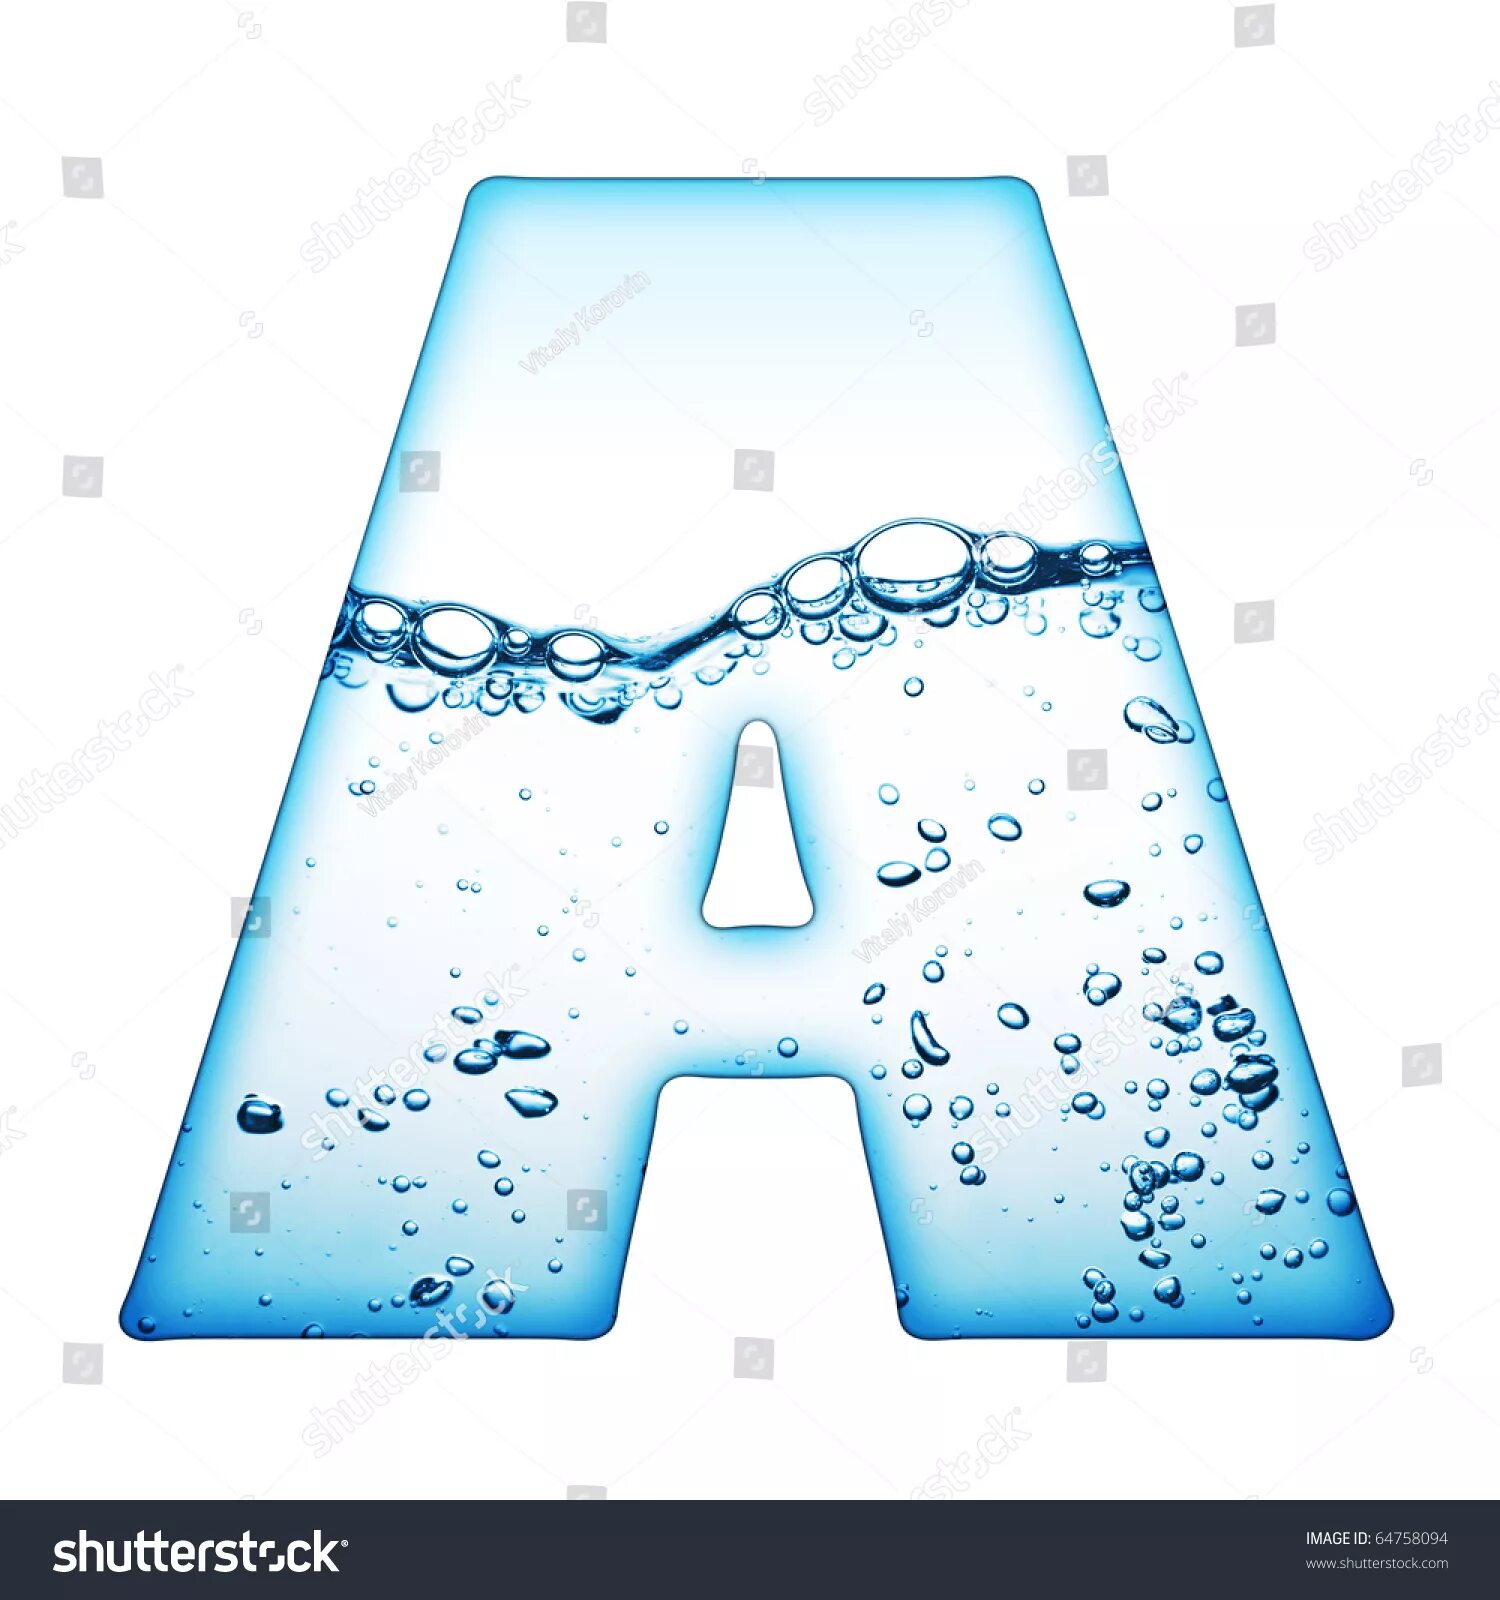 Русские буквы из воды. Водяные буквы. Водяные буквы русские. Буквы алфавита водные.